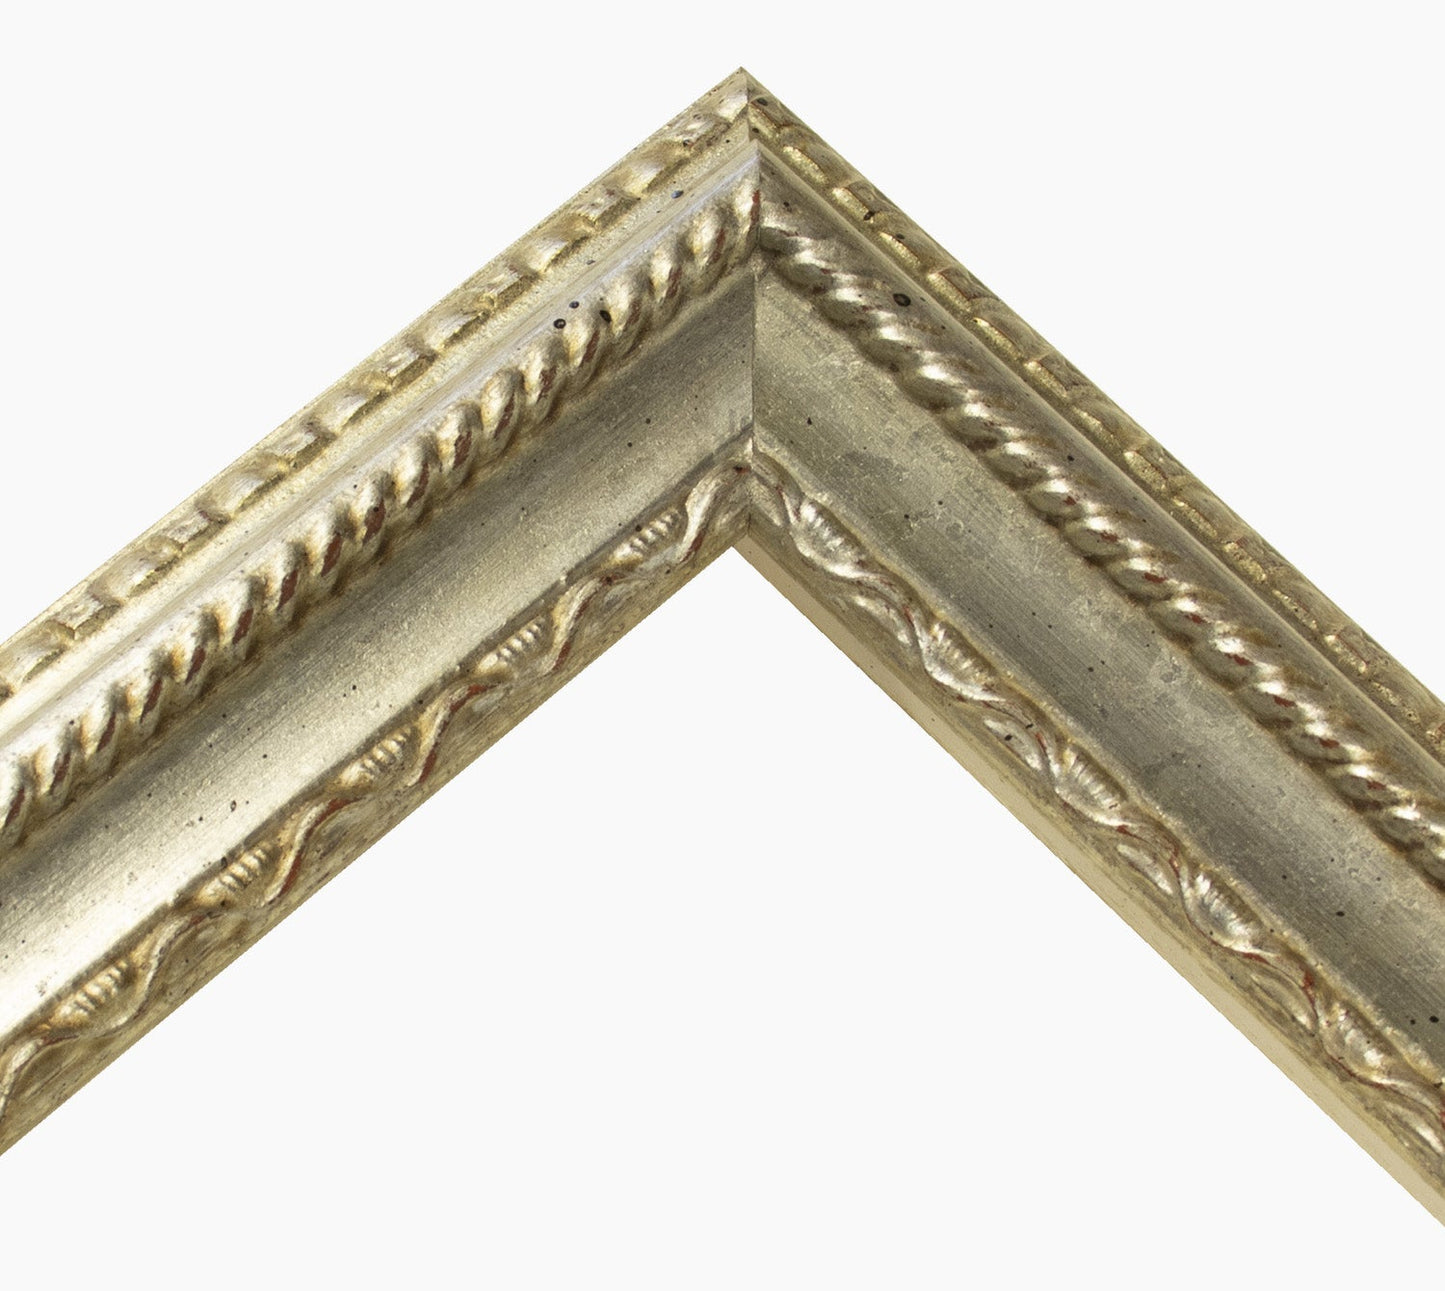 410.011 cadre en bois à la feuille d'argent mesure de profil 60x40 mm Lombarda cornici S.n.c.